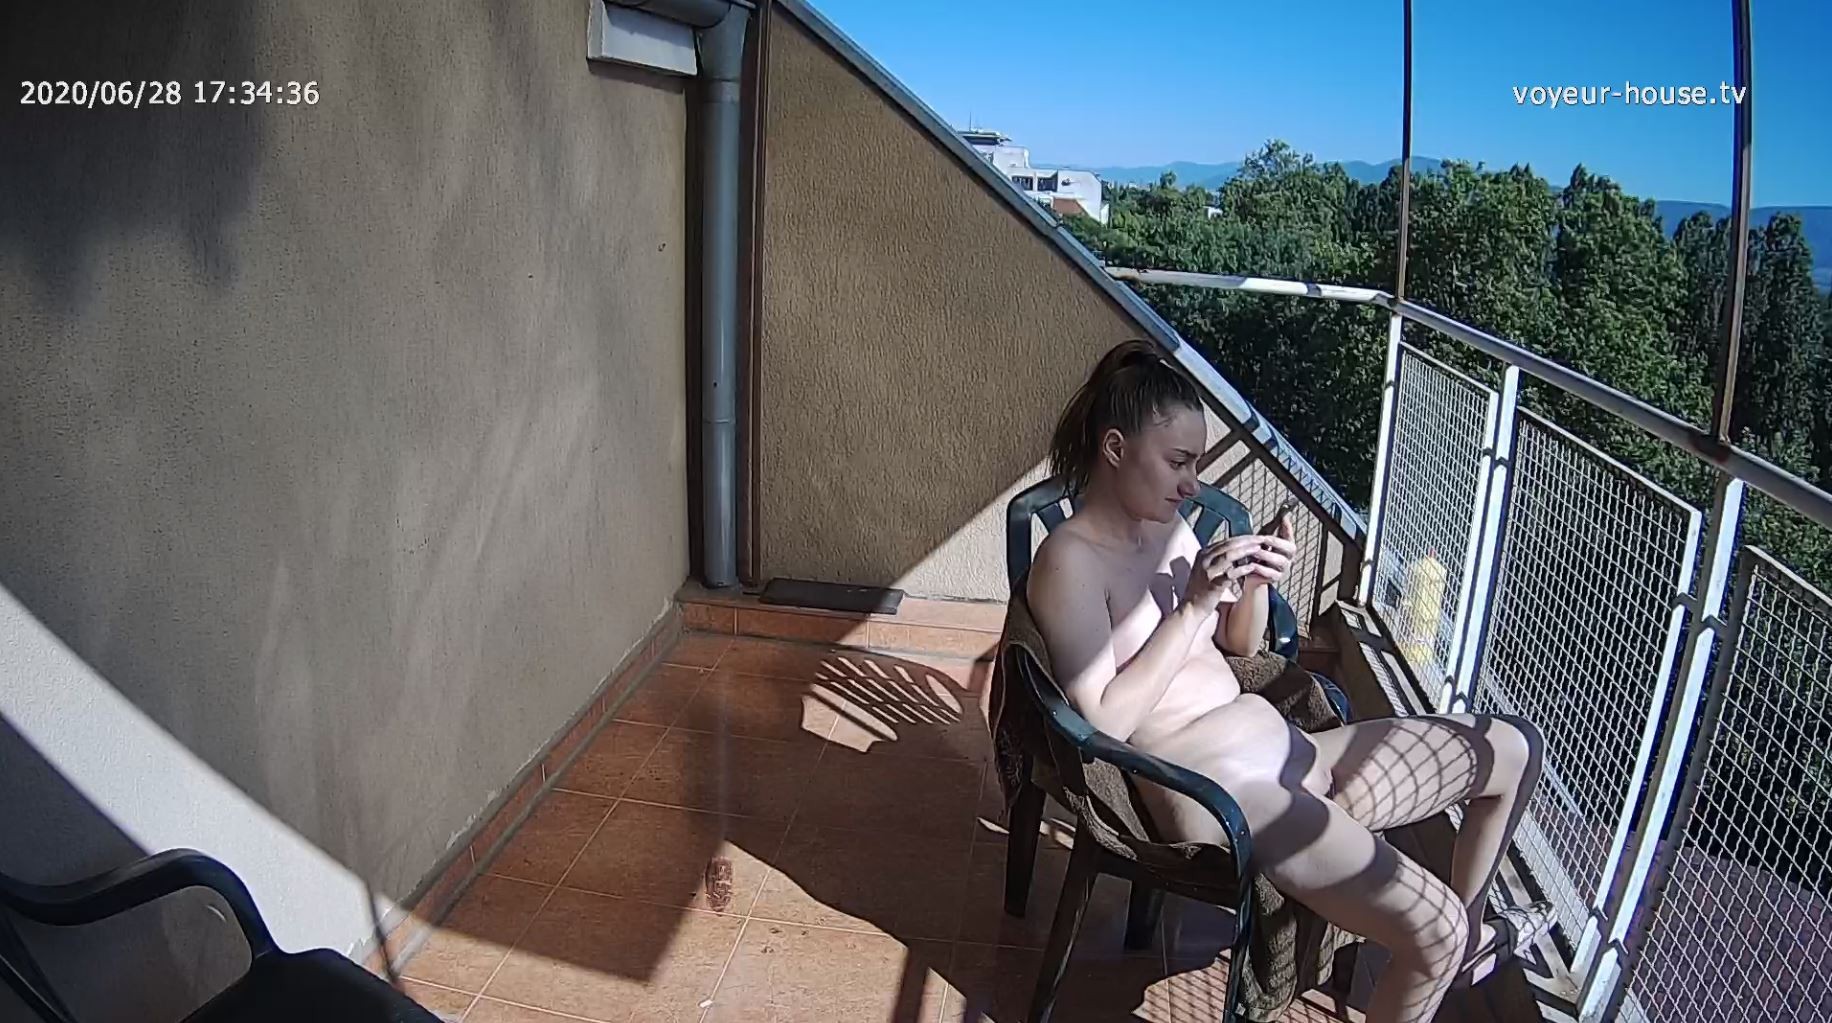 Sicilia naked sunbathing after shower, Jun28/20